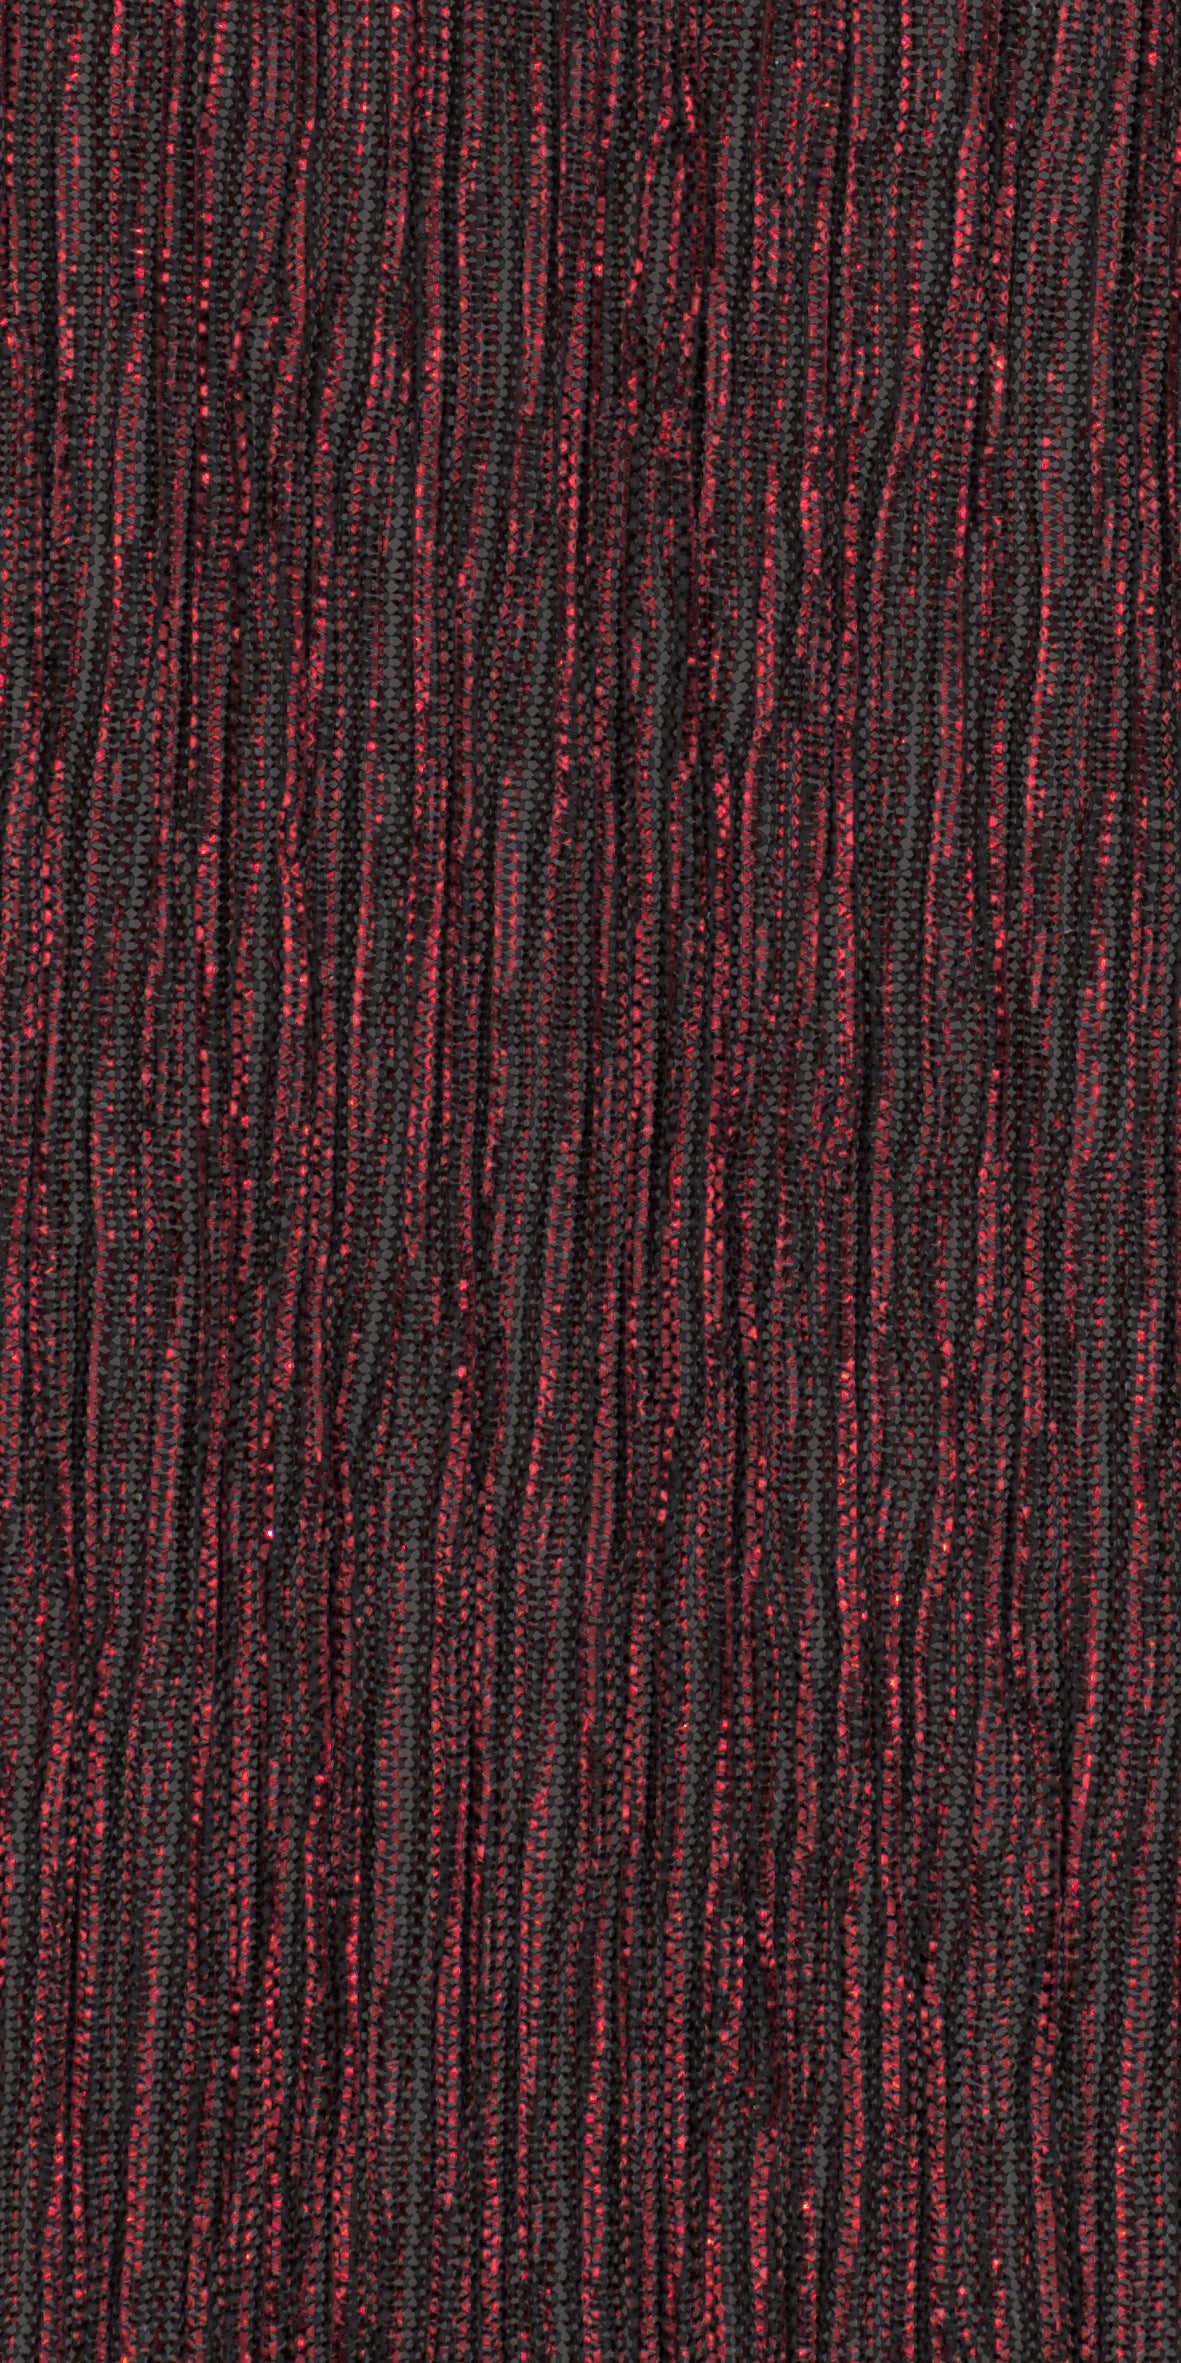 12006-20 Black Red Metallic Pleat Plain Dyed Blend 126g/yd 56&quot; blend knit metallic plain dyed pleat ppl new red Metallic, Pleat - knit fabric - woven fabric - fabric company - fabric wholesale - fabric b2b - fabric factory - high quality fabric - hong kong fabric - fabric hk - acetate fabric - cotton fabric - linen fabric - metallic fabric - nylon fabric - polyester fabric - spandex fabric - chun wing hing - cwh hk - fabric worldwide ship - 針織布 - 梳織布 - 布料公司- 布料批發 - 香港布料 - 秦榮興